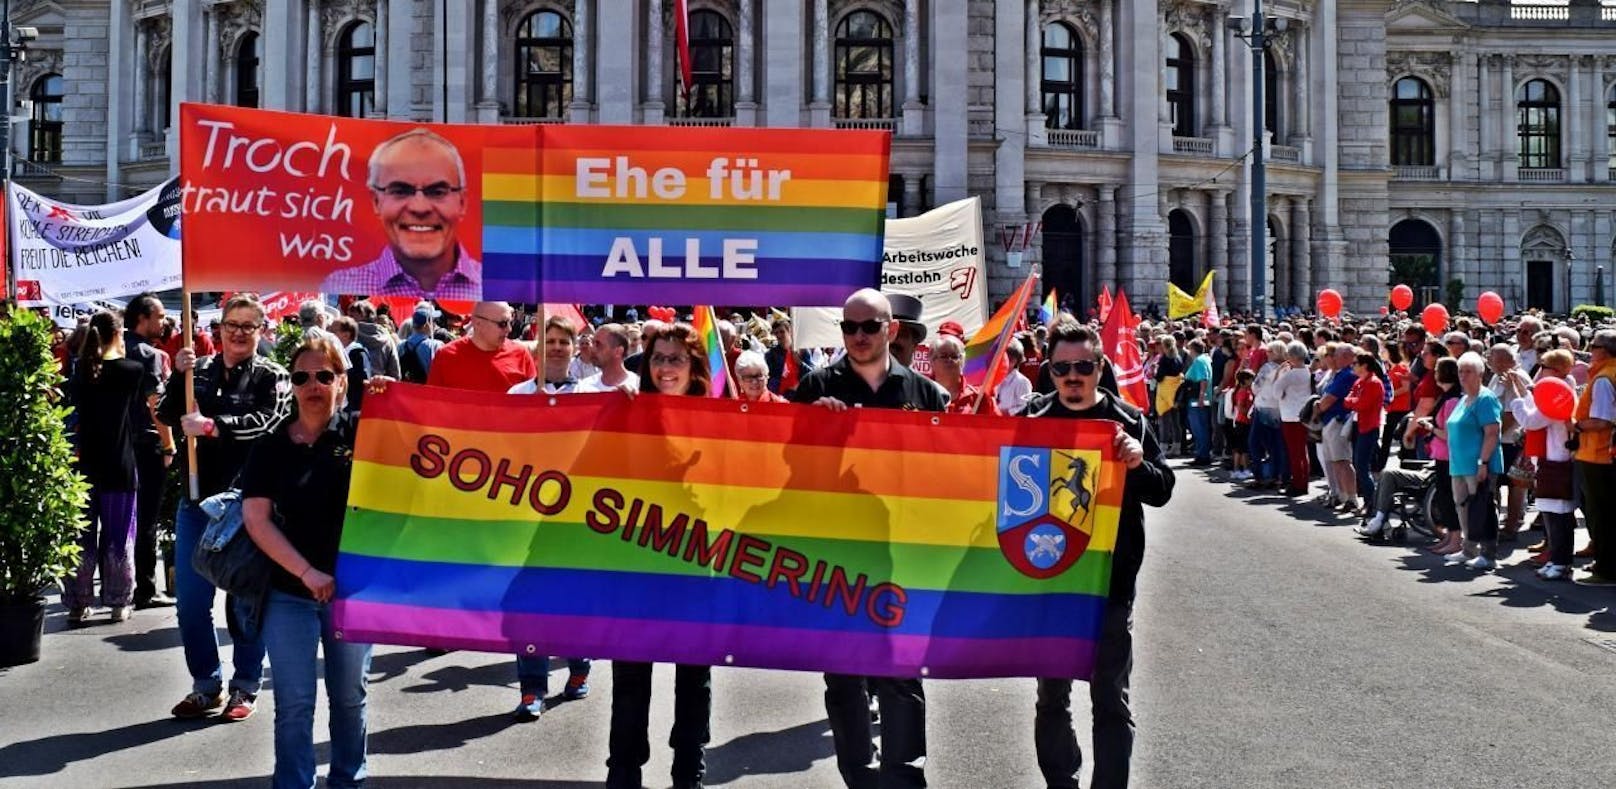 Die Ehe für Alle wurde auch beim traditionellen Mai Aufmarsch der SPÖ in Wien gefordert. (Im Bild: die SoHo-Simmering)